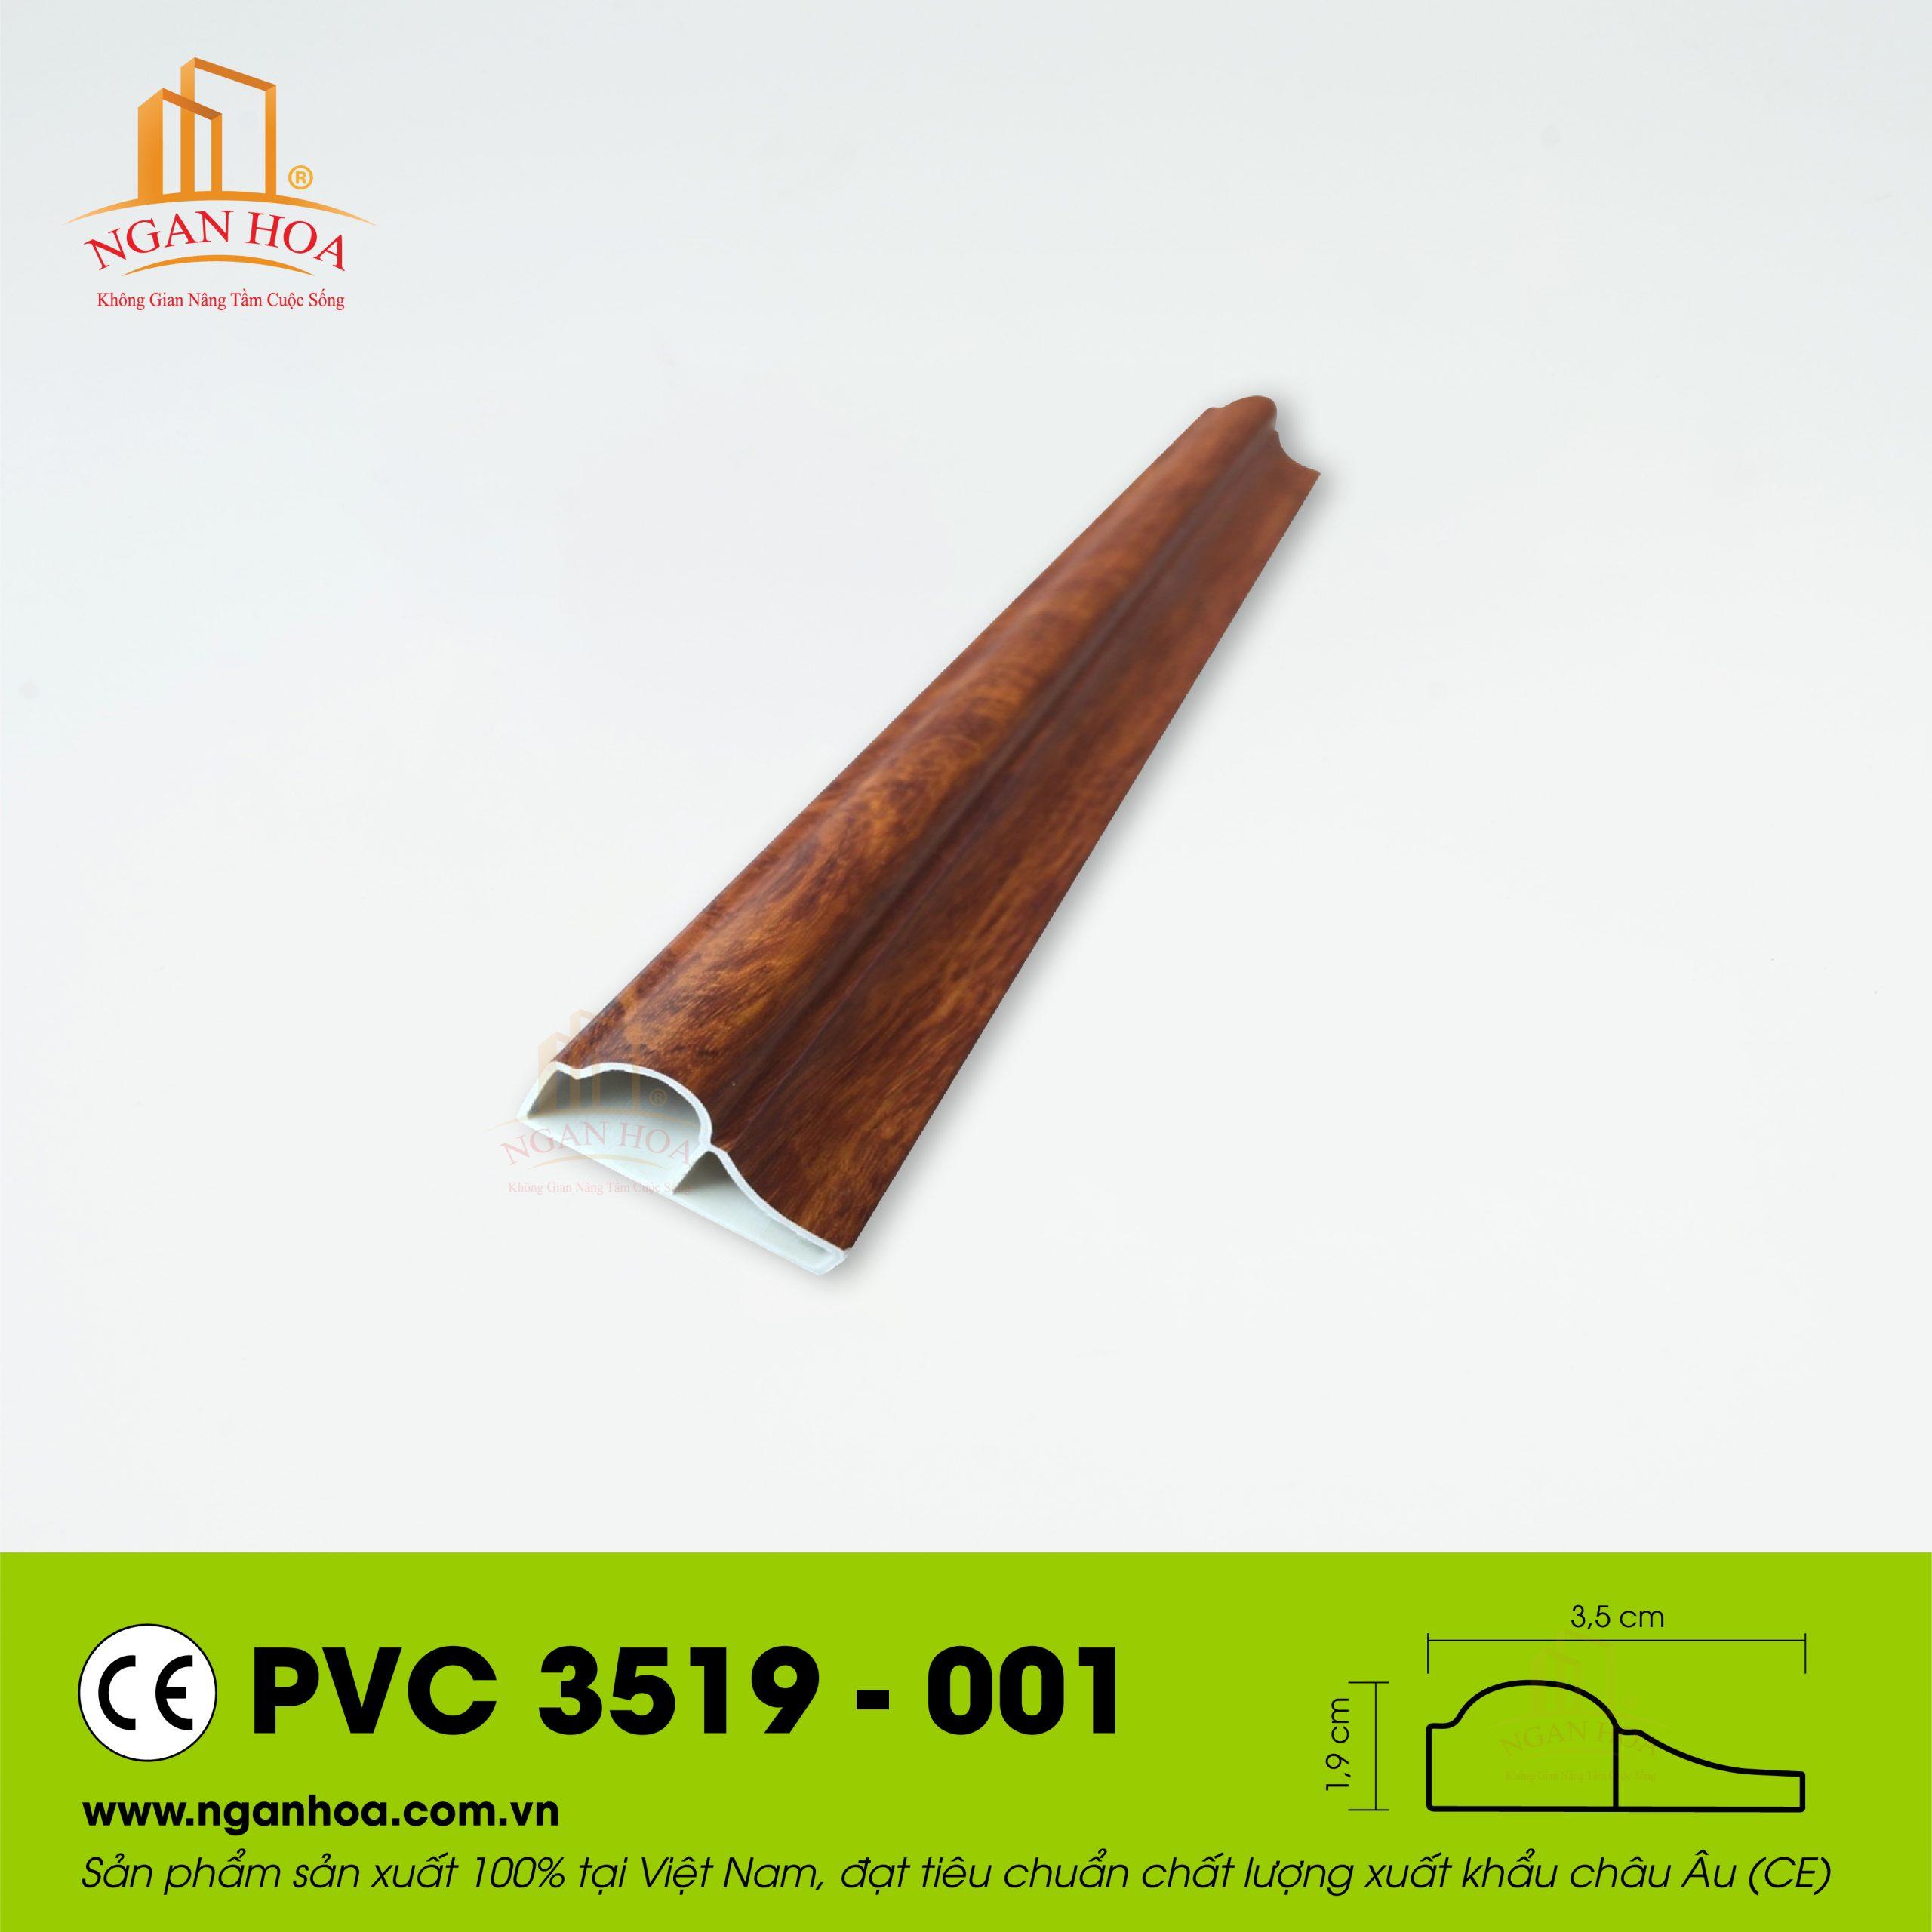 PVC 3519 001 scaled